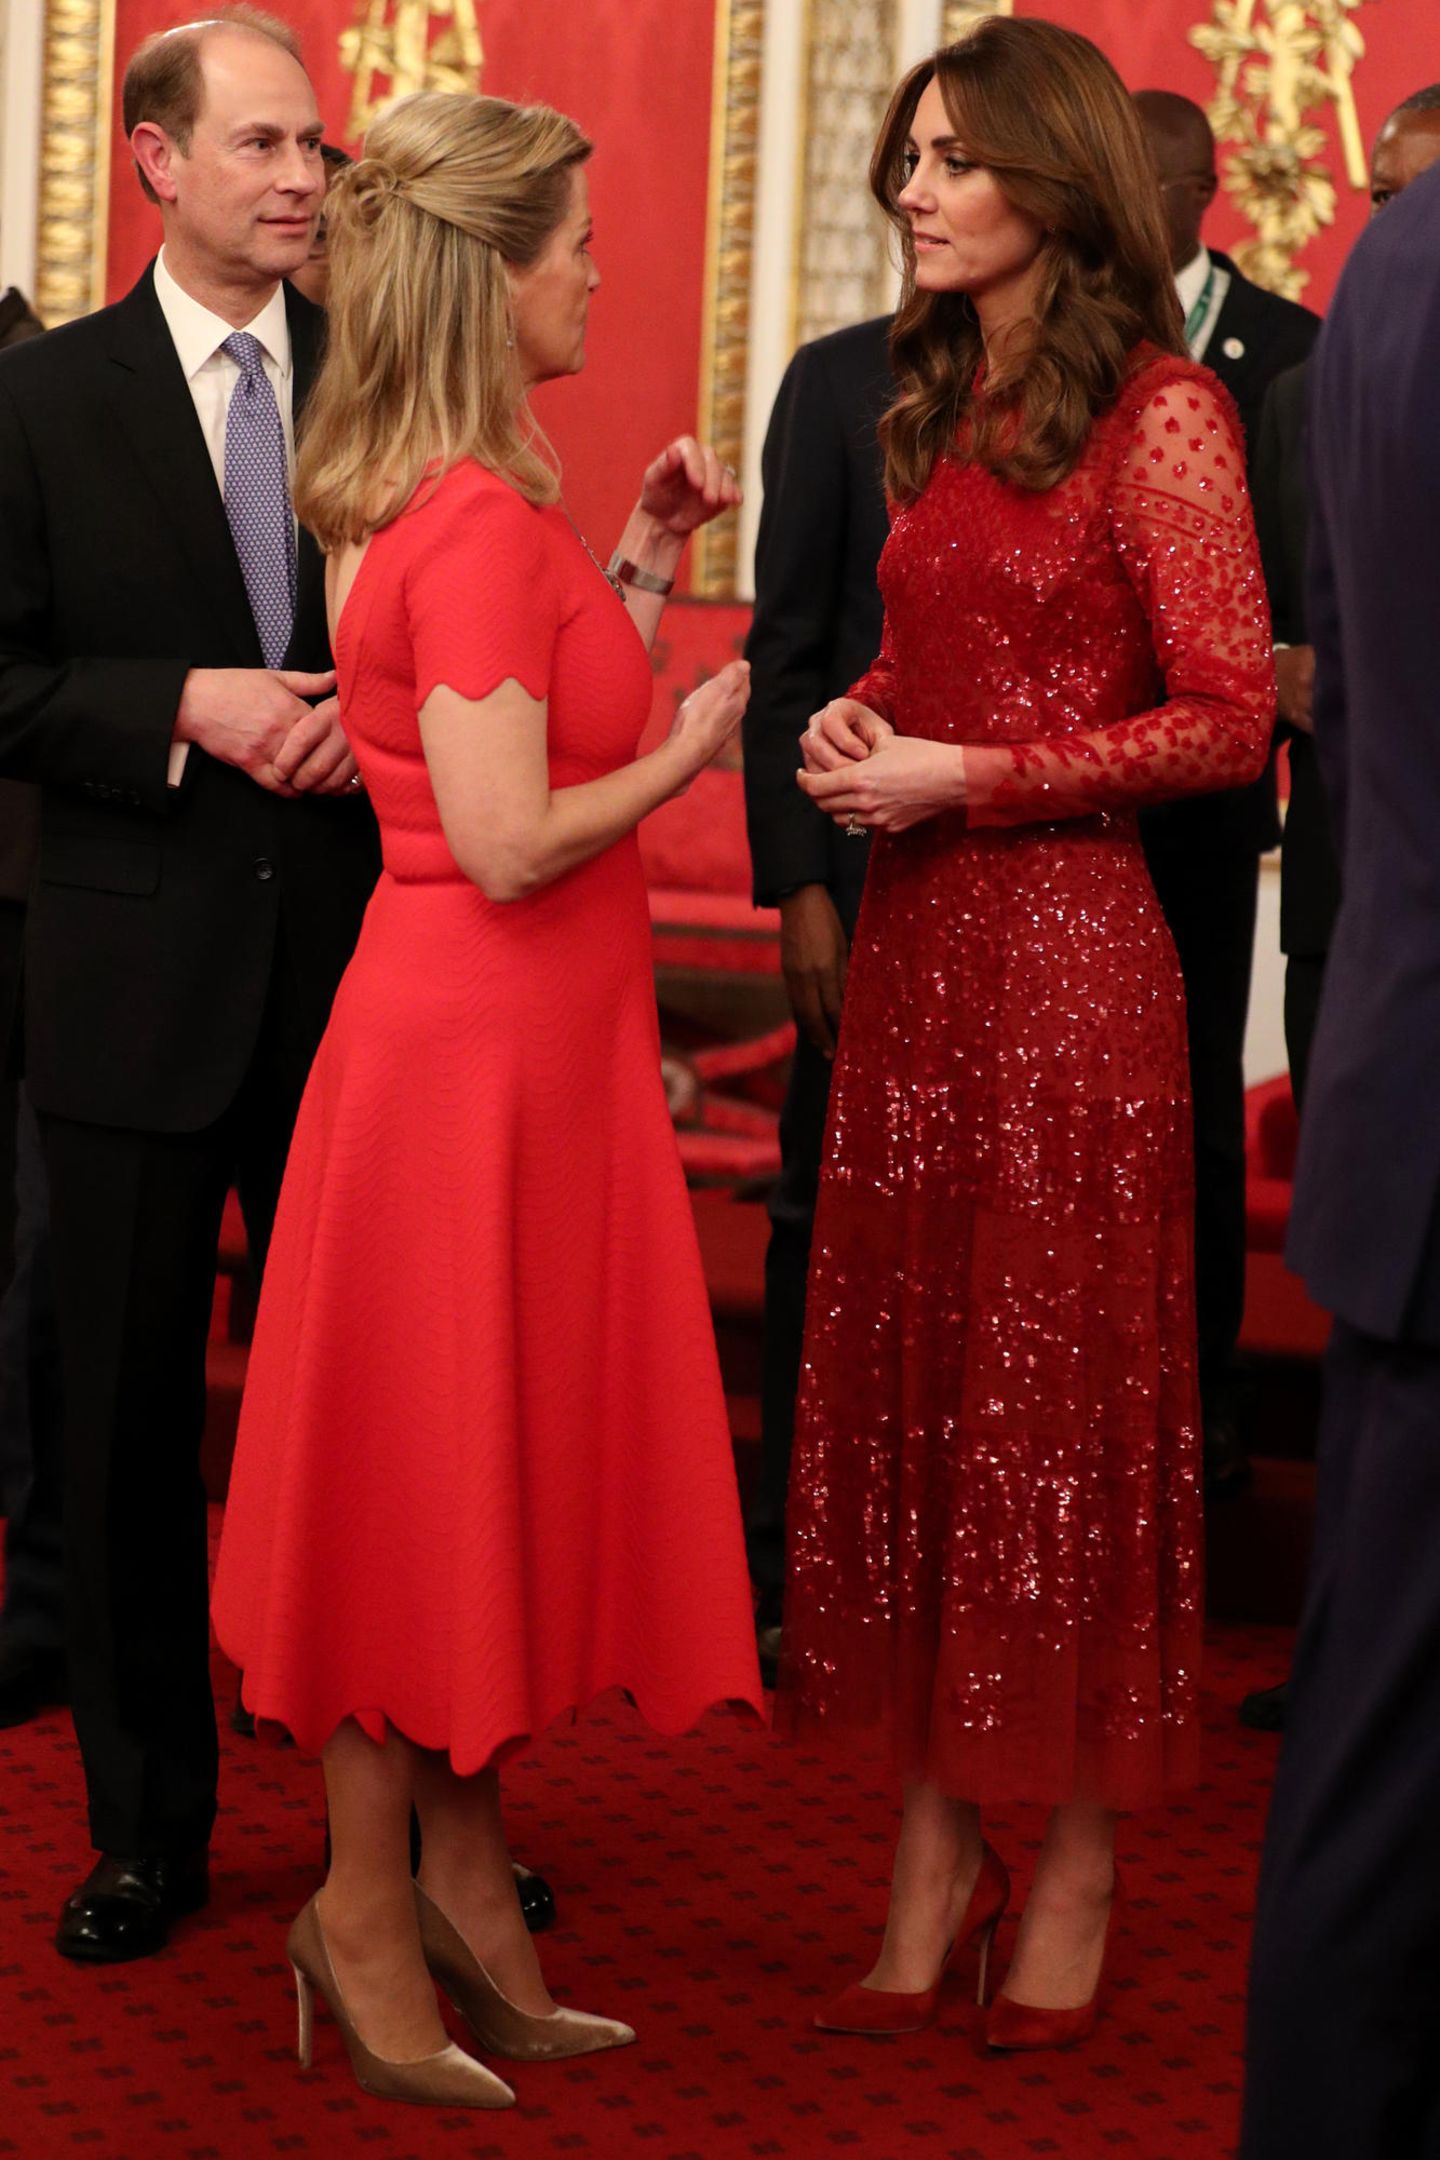 Zufall oder abgesprochen? Beim Empfang des "UK-Africa Investment Summit" im Buckingham Palast am Montag (20. Januar) wählten Sophie, Gräfin von Wessex, und Herzogin Catherine beide Kleider in knalligem Rot.